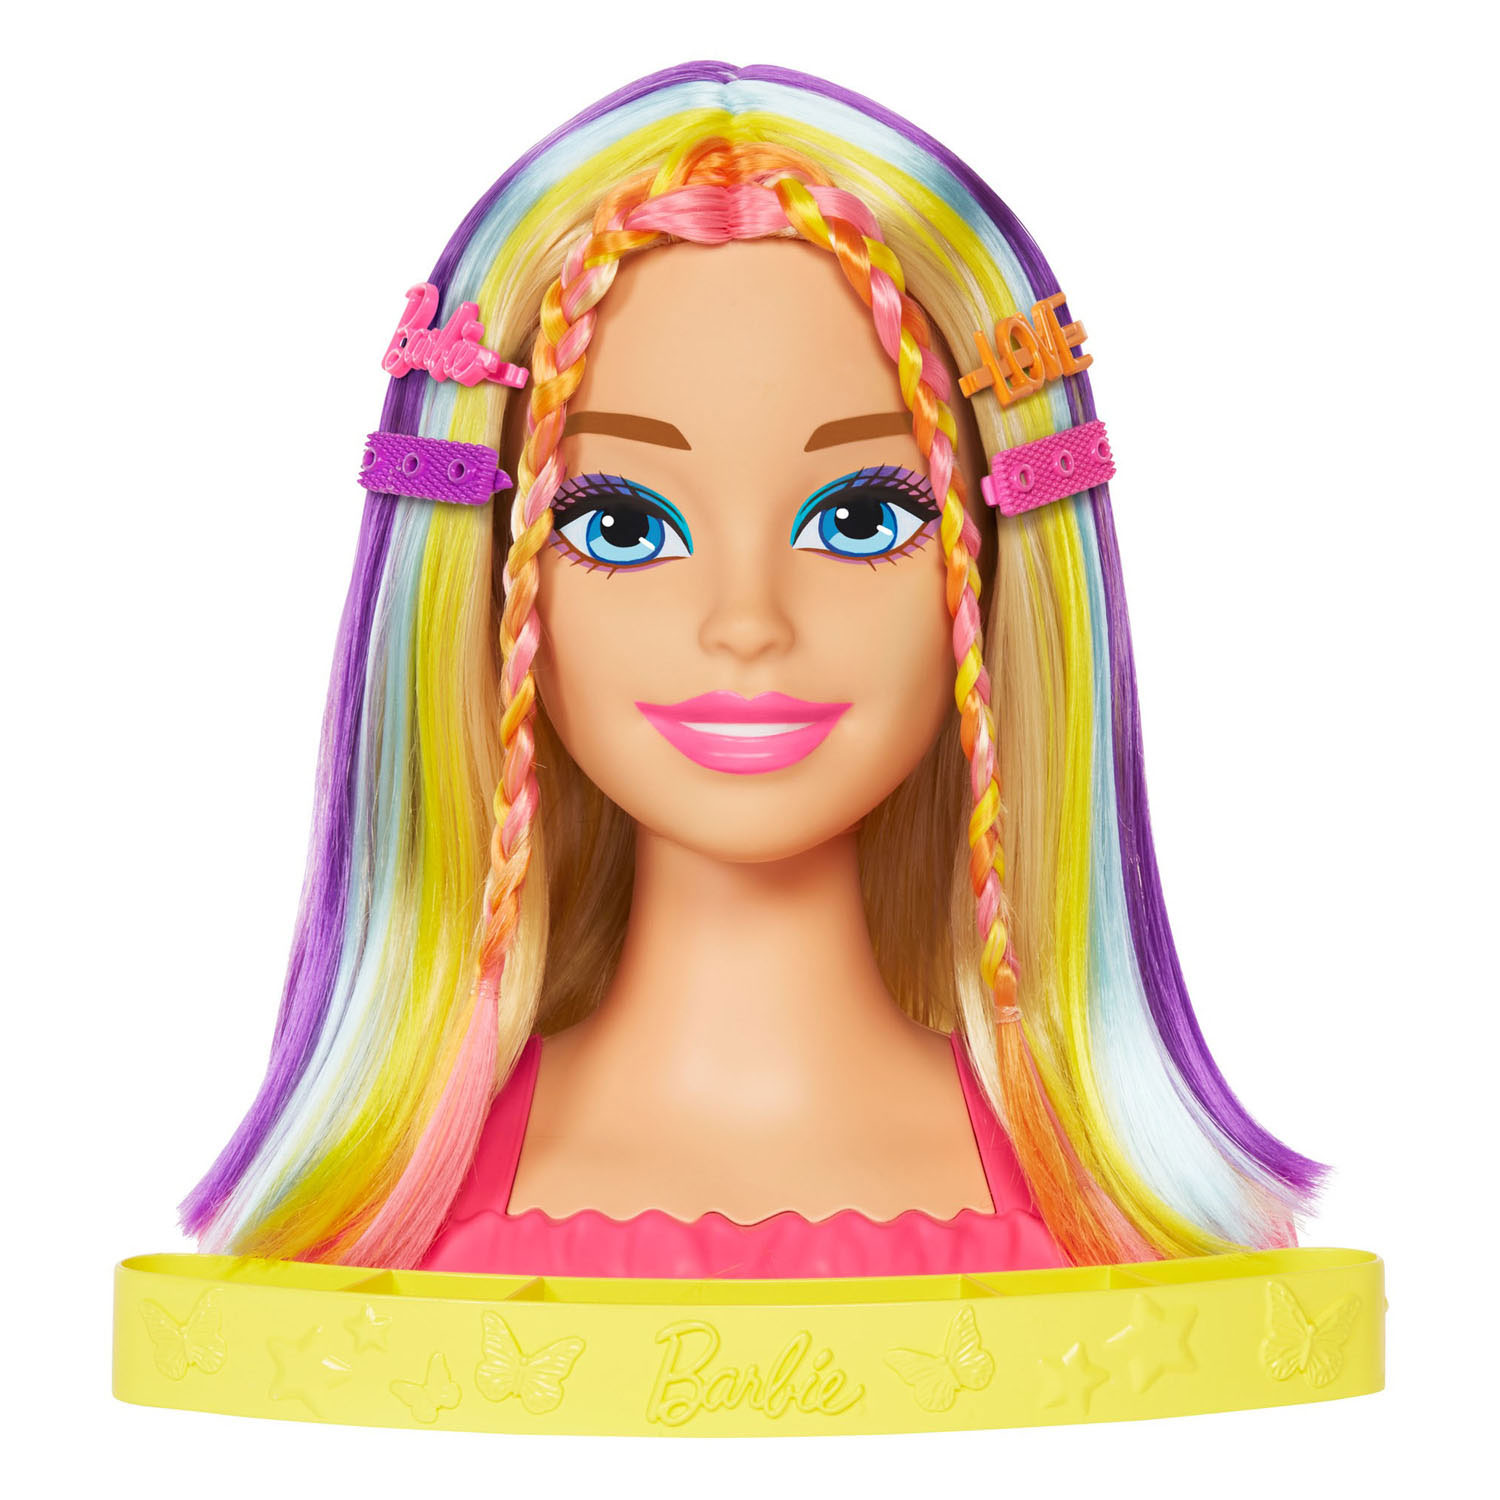 Barbie Neon Rainbow Kaphoofd Deluxe